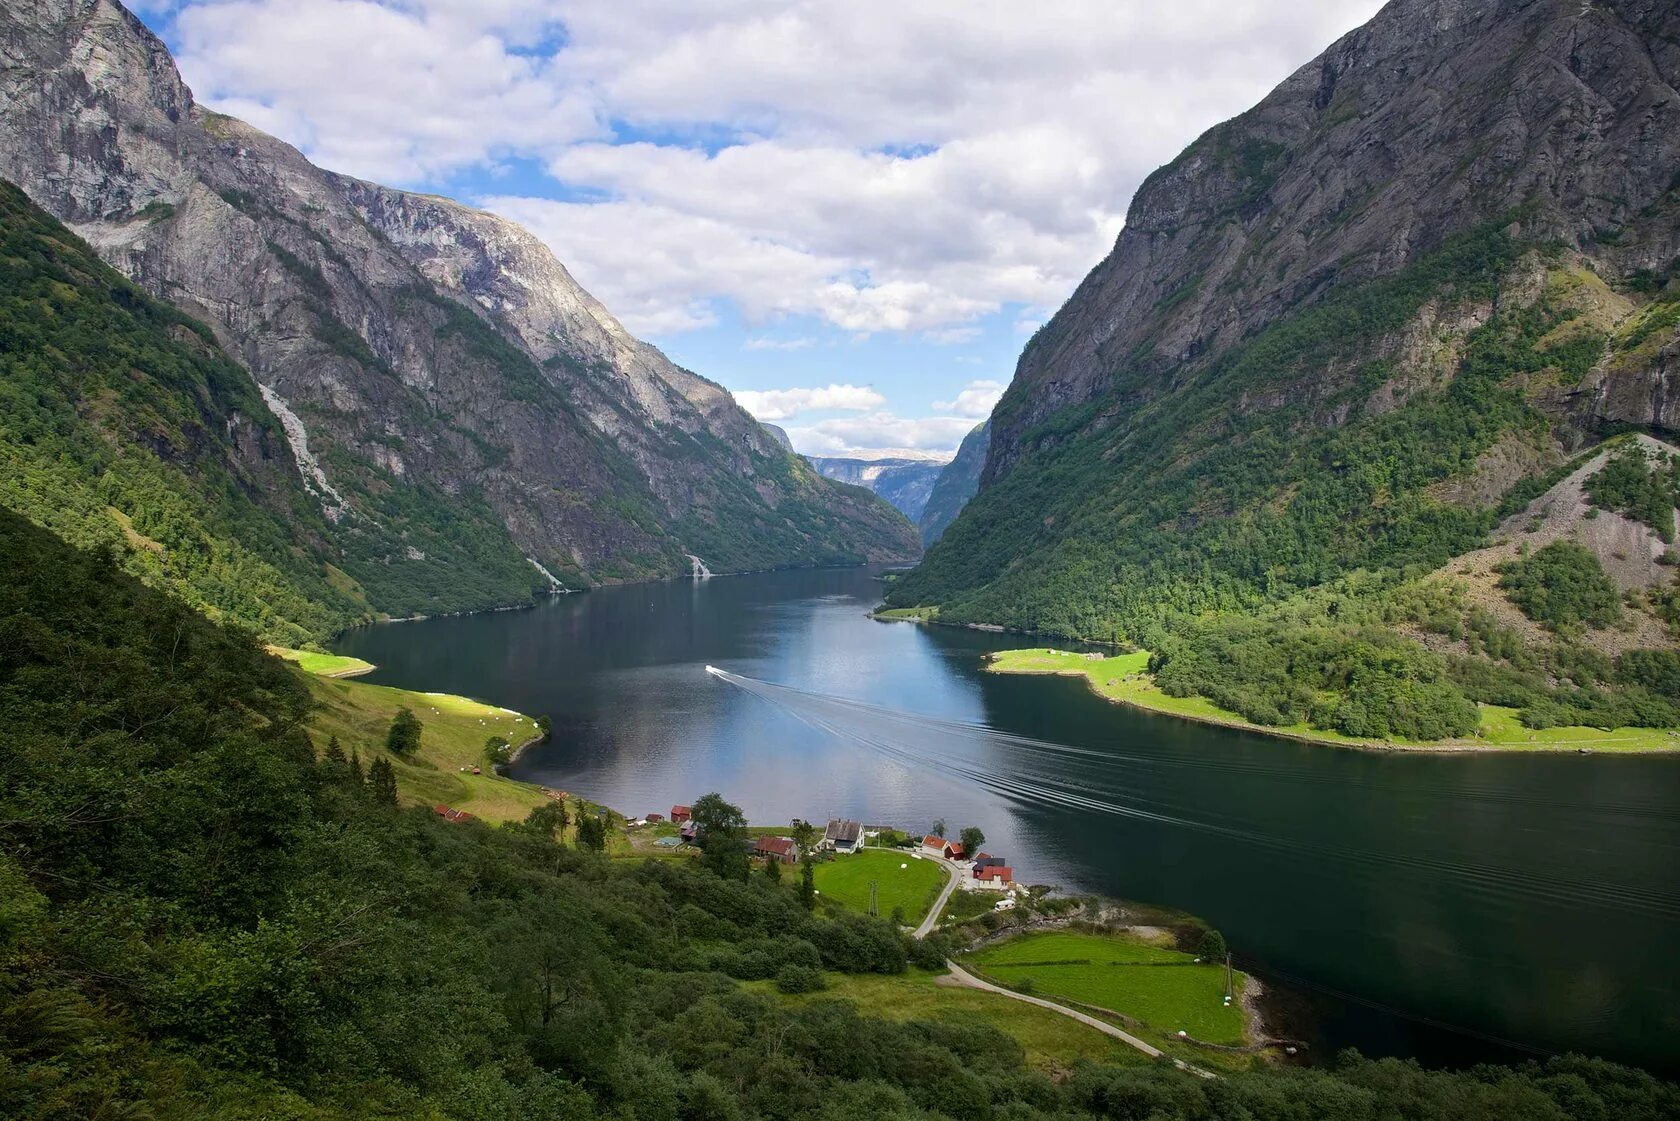 Какая страна имеет знаменитую природную достопримечательность фьорды. Нерёй-Фьорд Норвегия. Осло Норвегия фьорды. Гейрангер-Фьорд Норвегия. Фьорды Западной Норвегии Нур-Фьорд.